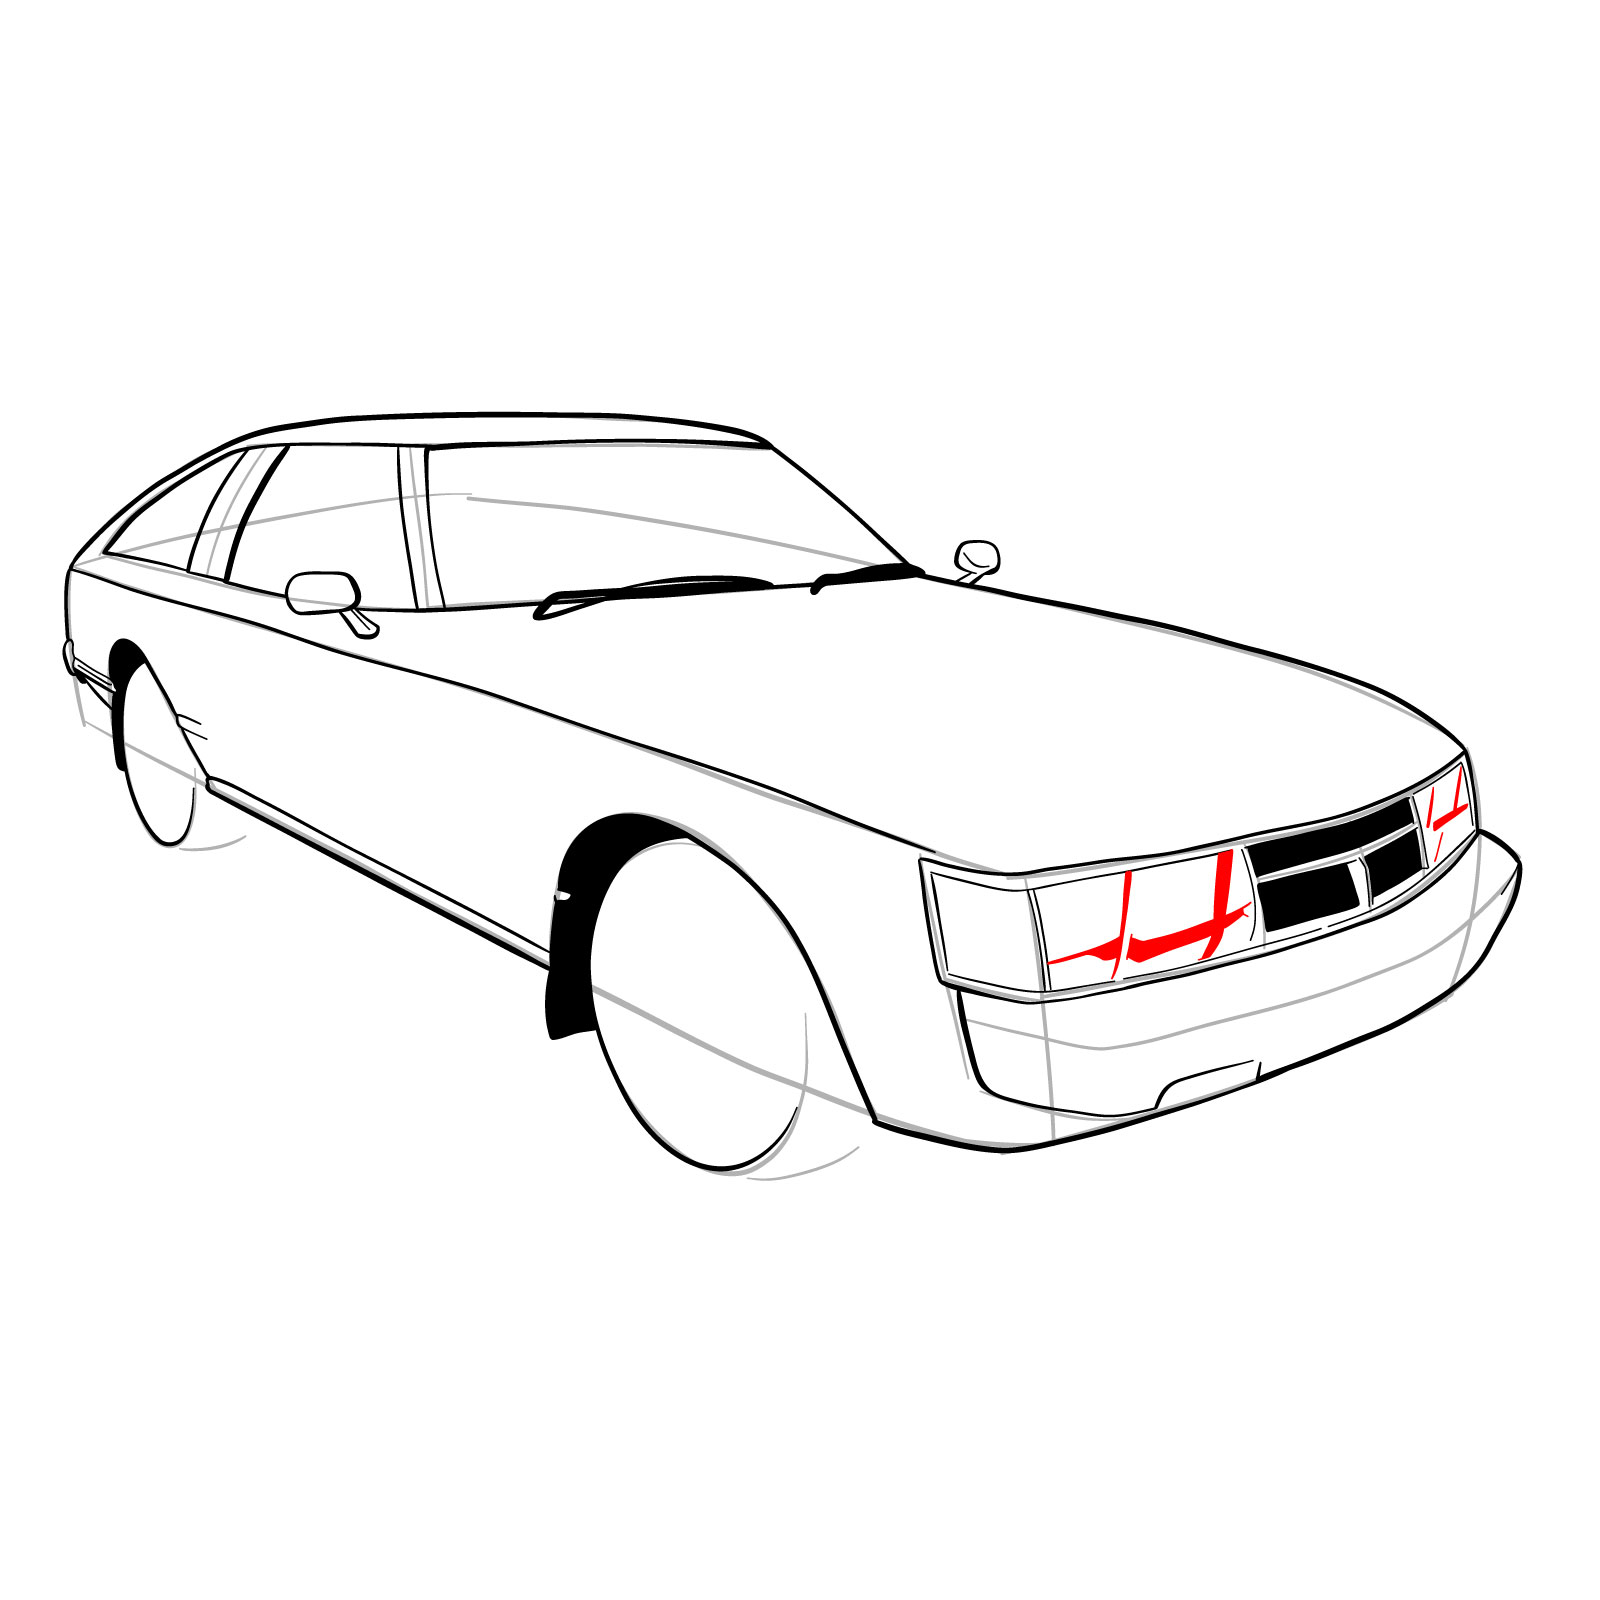 How to draw a 1979 Toyota Celica Supra Mk I Coupe - step 21